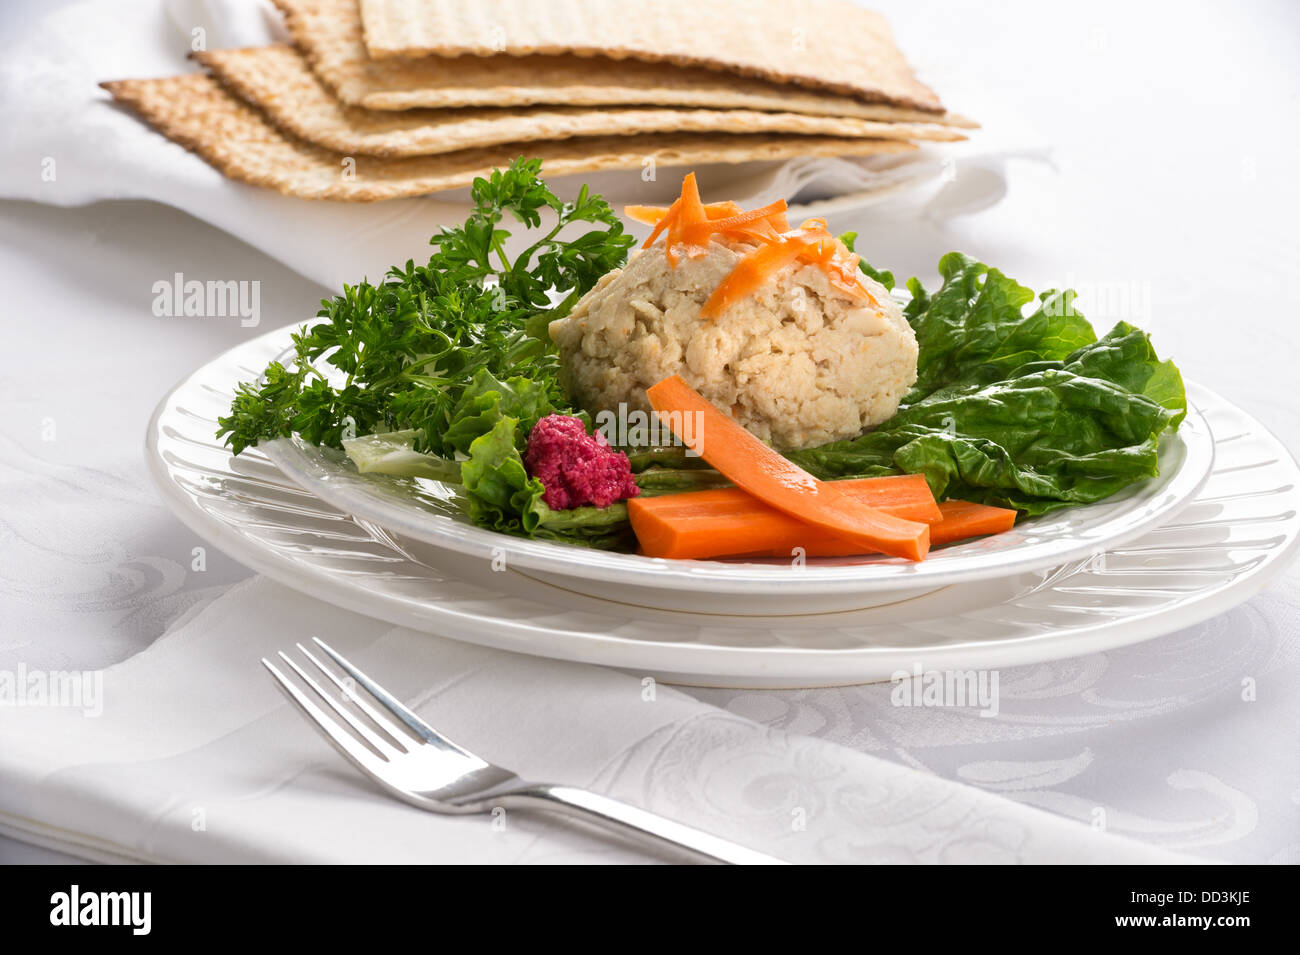 Tradizionale pasqua ebraica cibo pesce gefilte con carote, prezzemolo, rafano, e lattuga su tovaglie bianche tovaglie Foto Stock